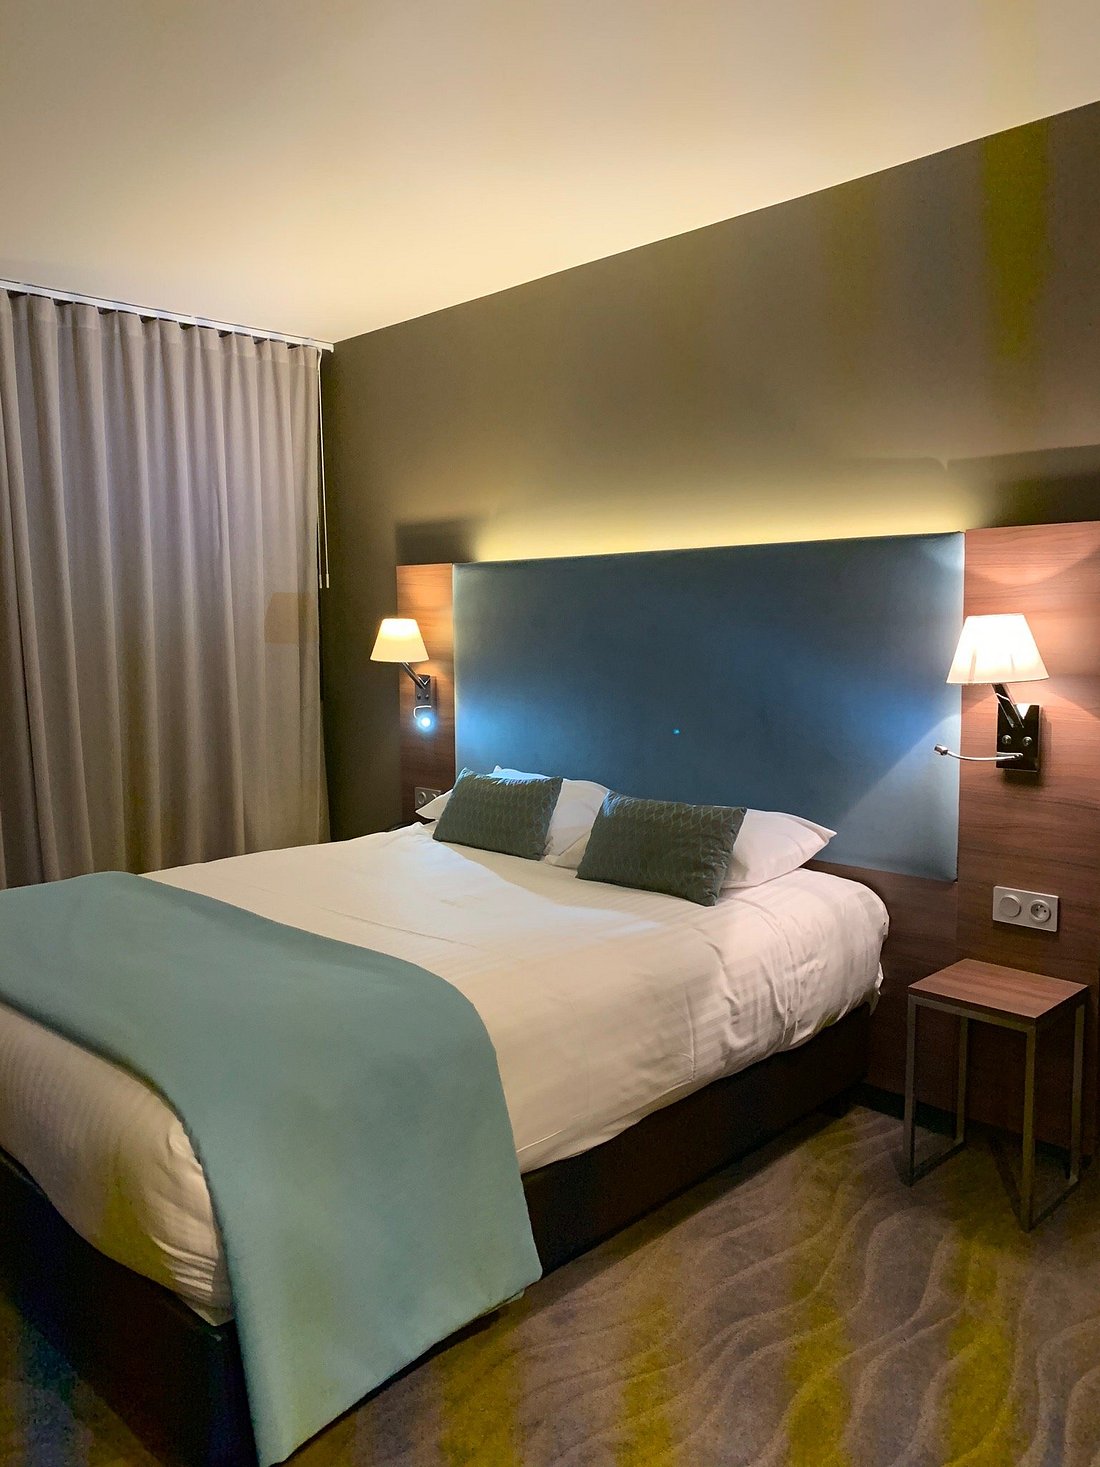 HOTEL LOU CASTELET (Carros) - Hotel Reviews, Photos, Rate Comparison ...